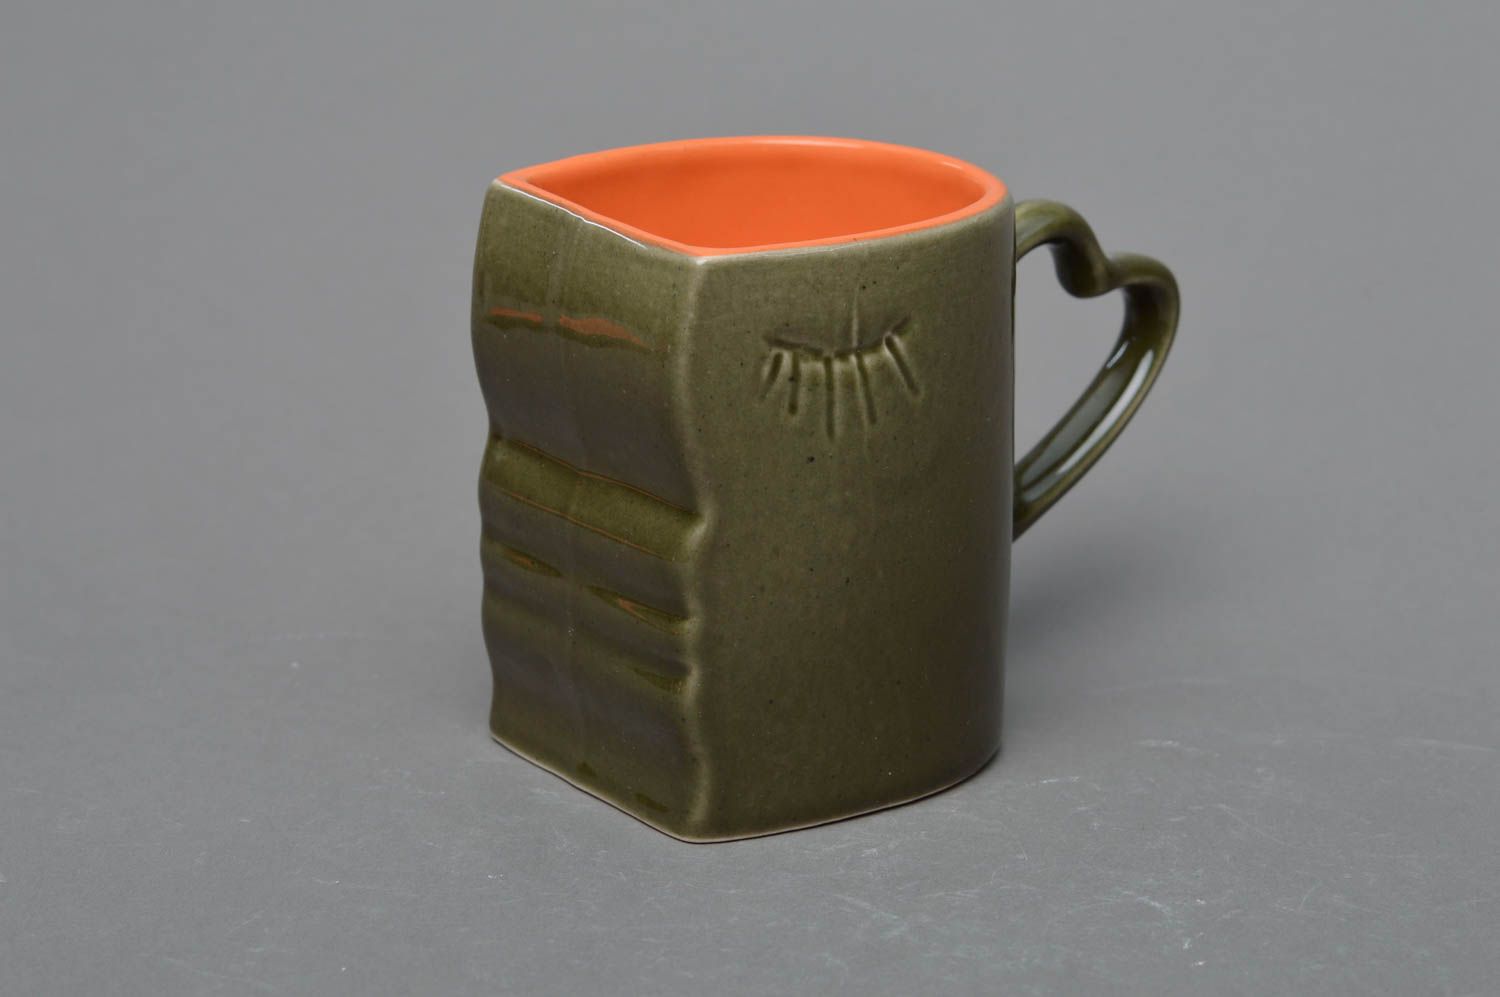 Зеленая с оранжевым чашка из фарфора ручной работы расписанная глазурью фото 3